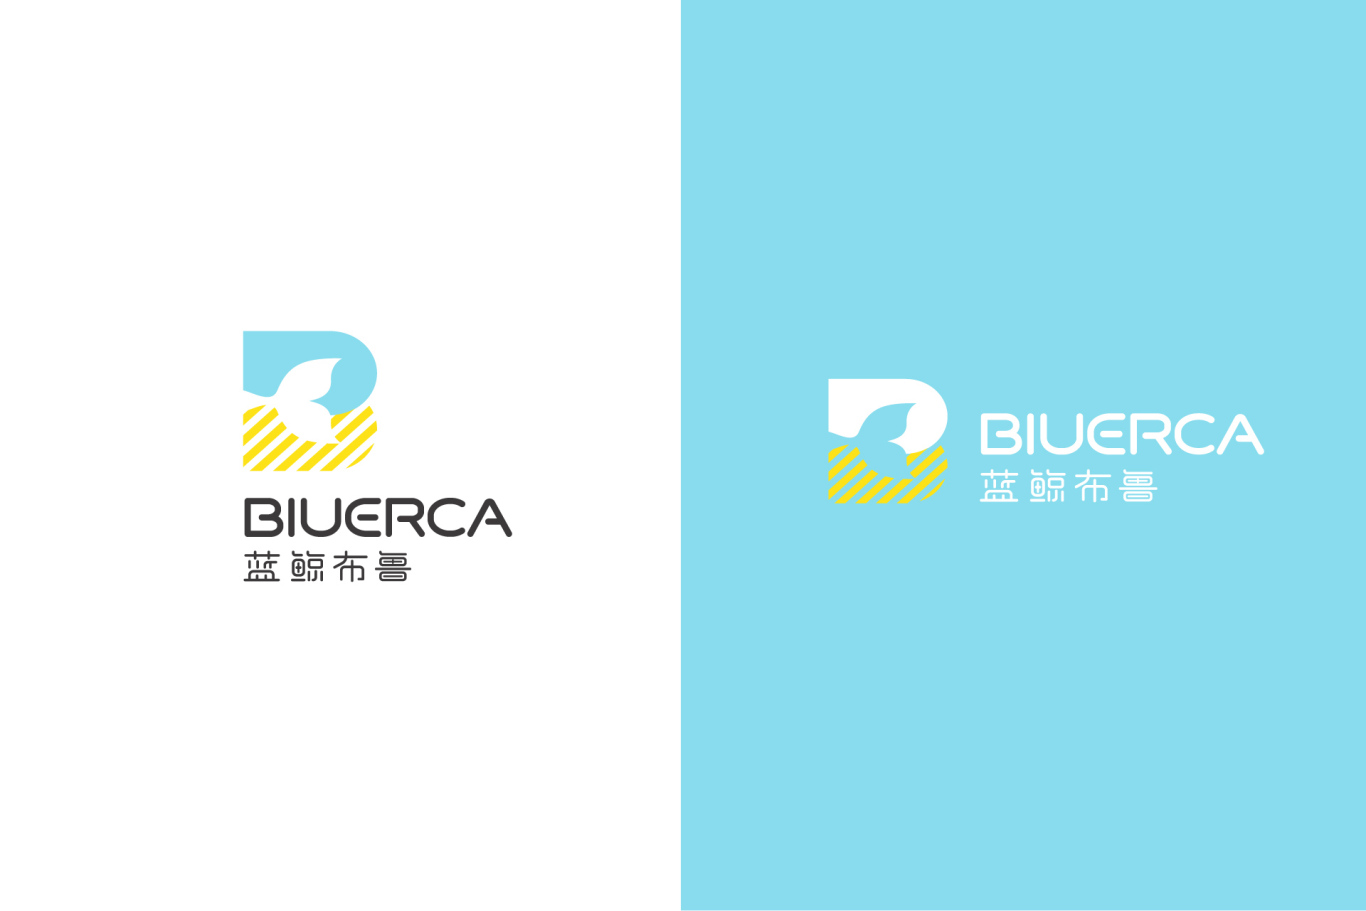 蓝鲸布鲁教育品牌Logo设计 vi设计图0